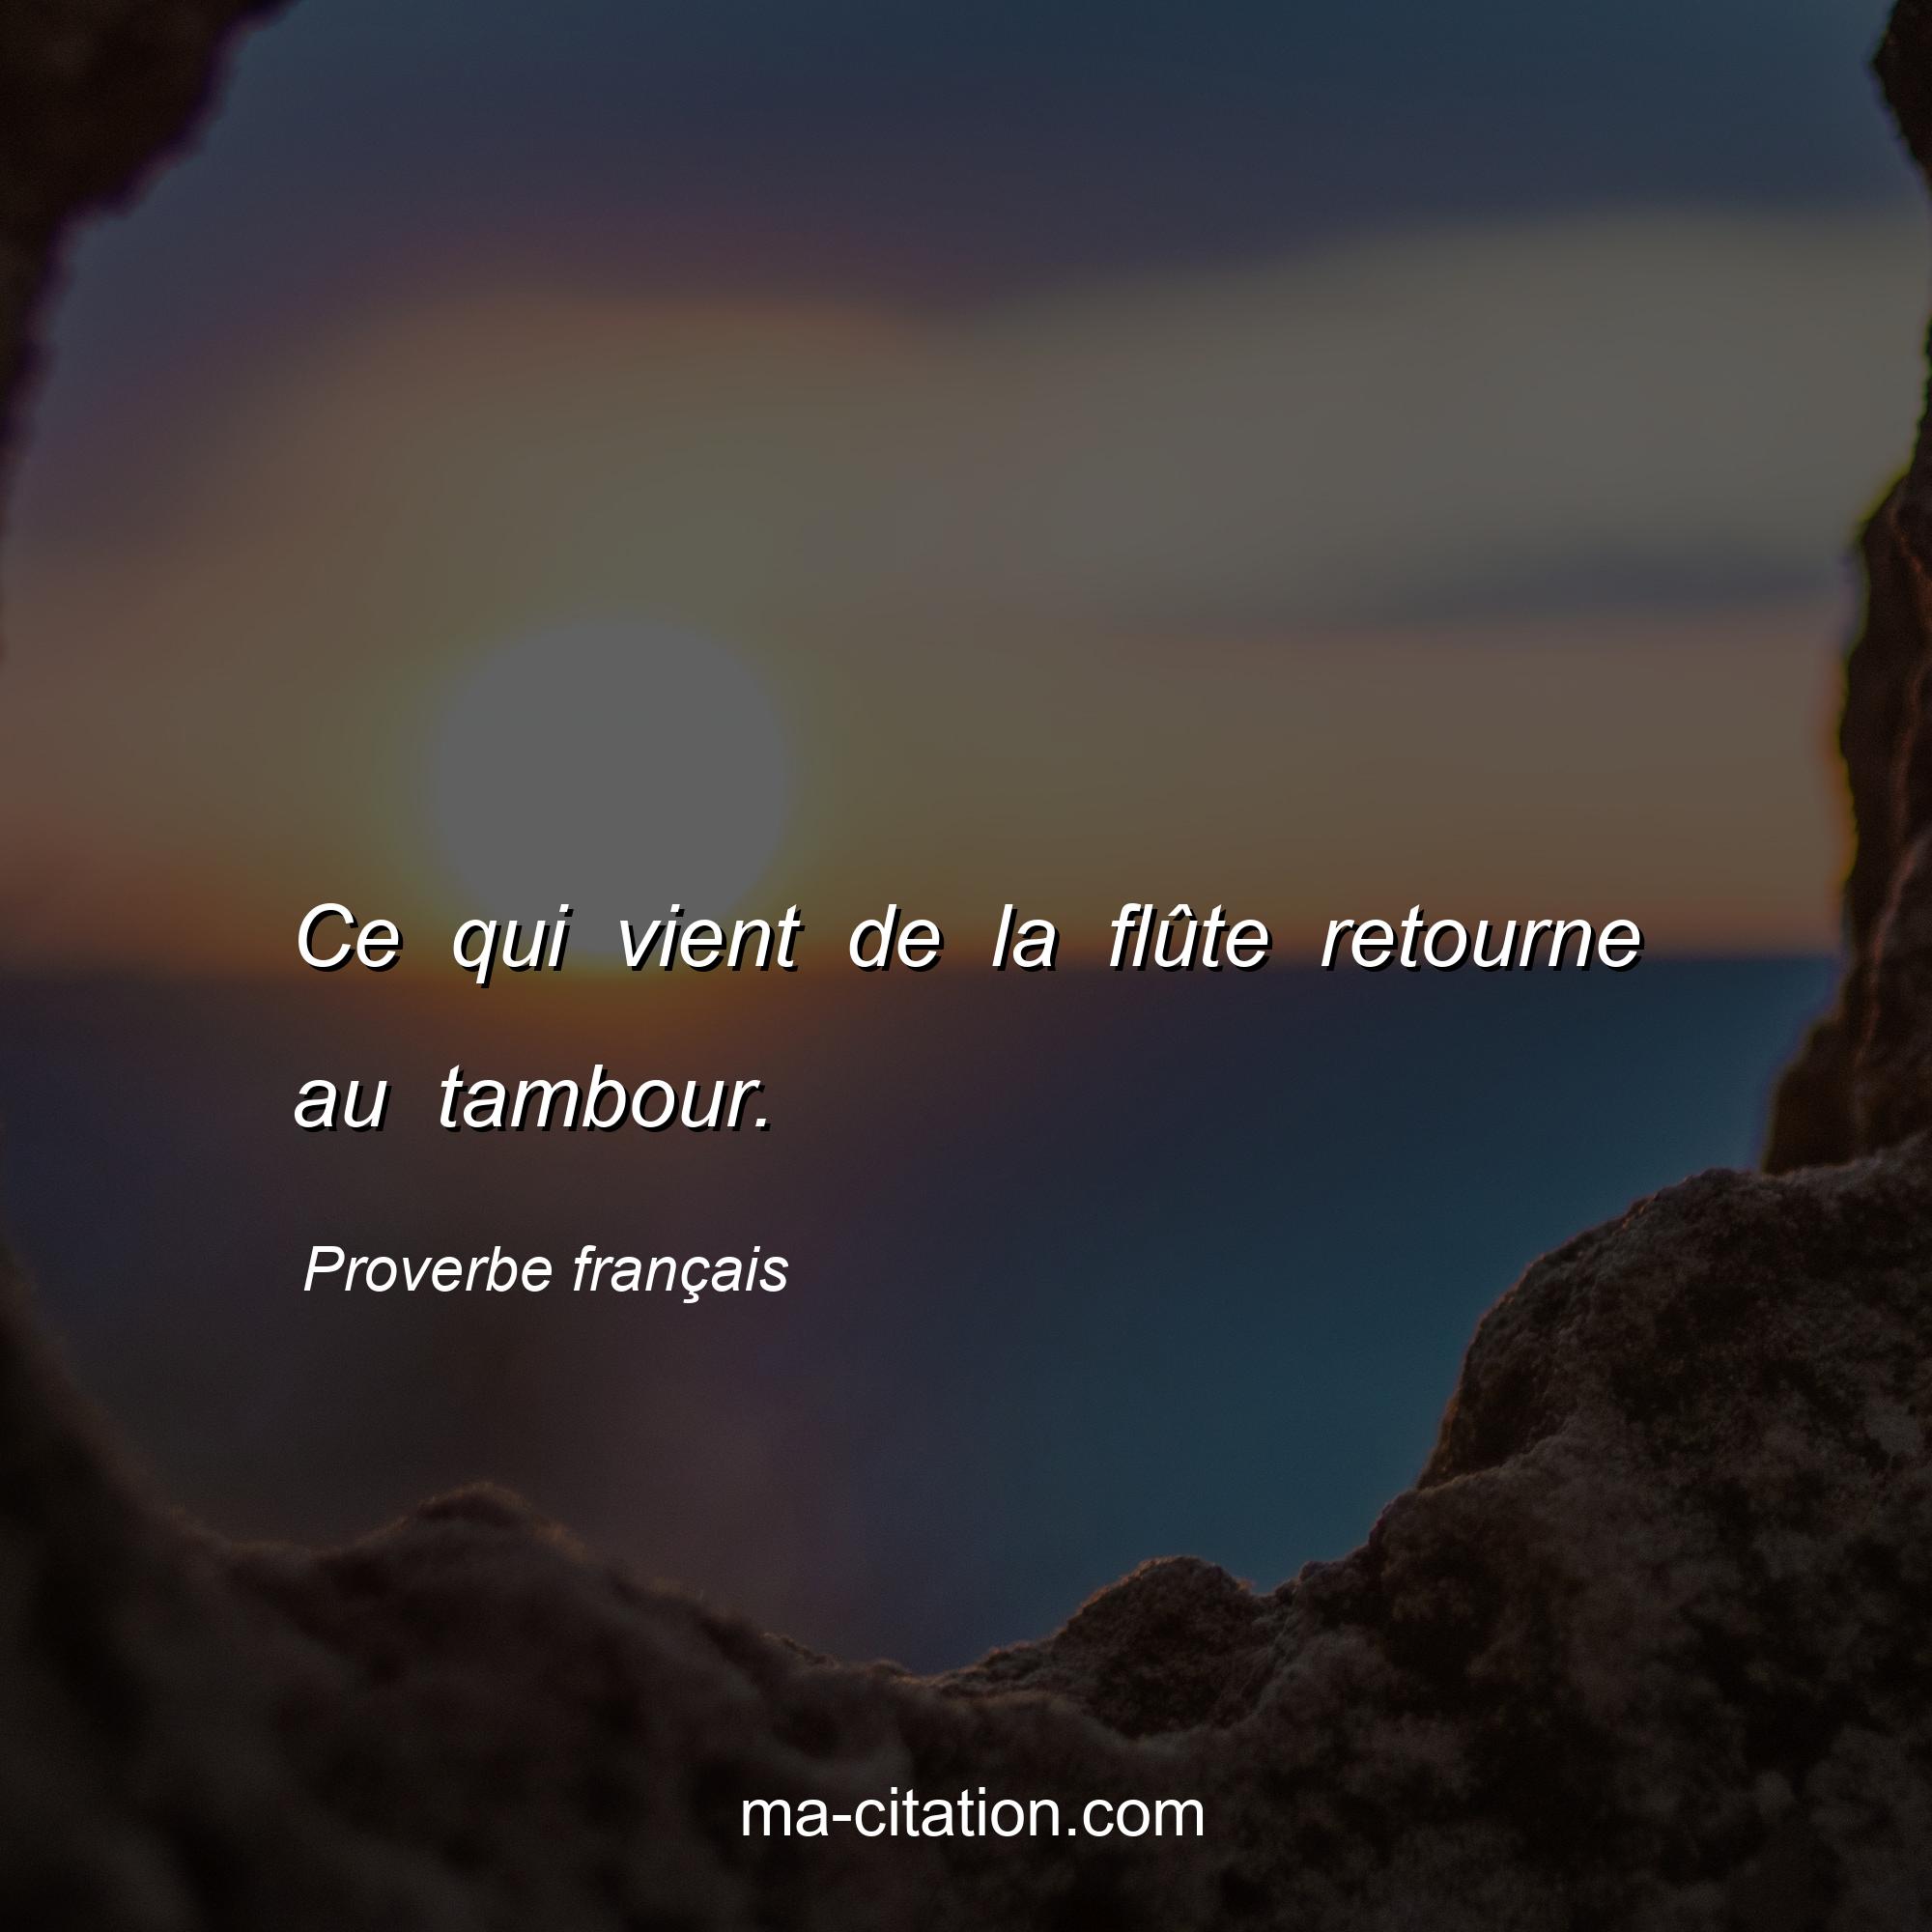 Proverbe français : Ce qui vient de la flûte retourne au tambour.